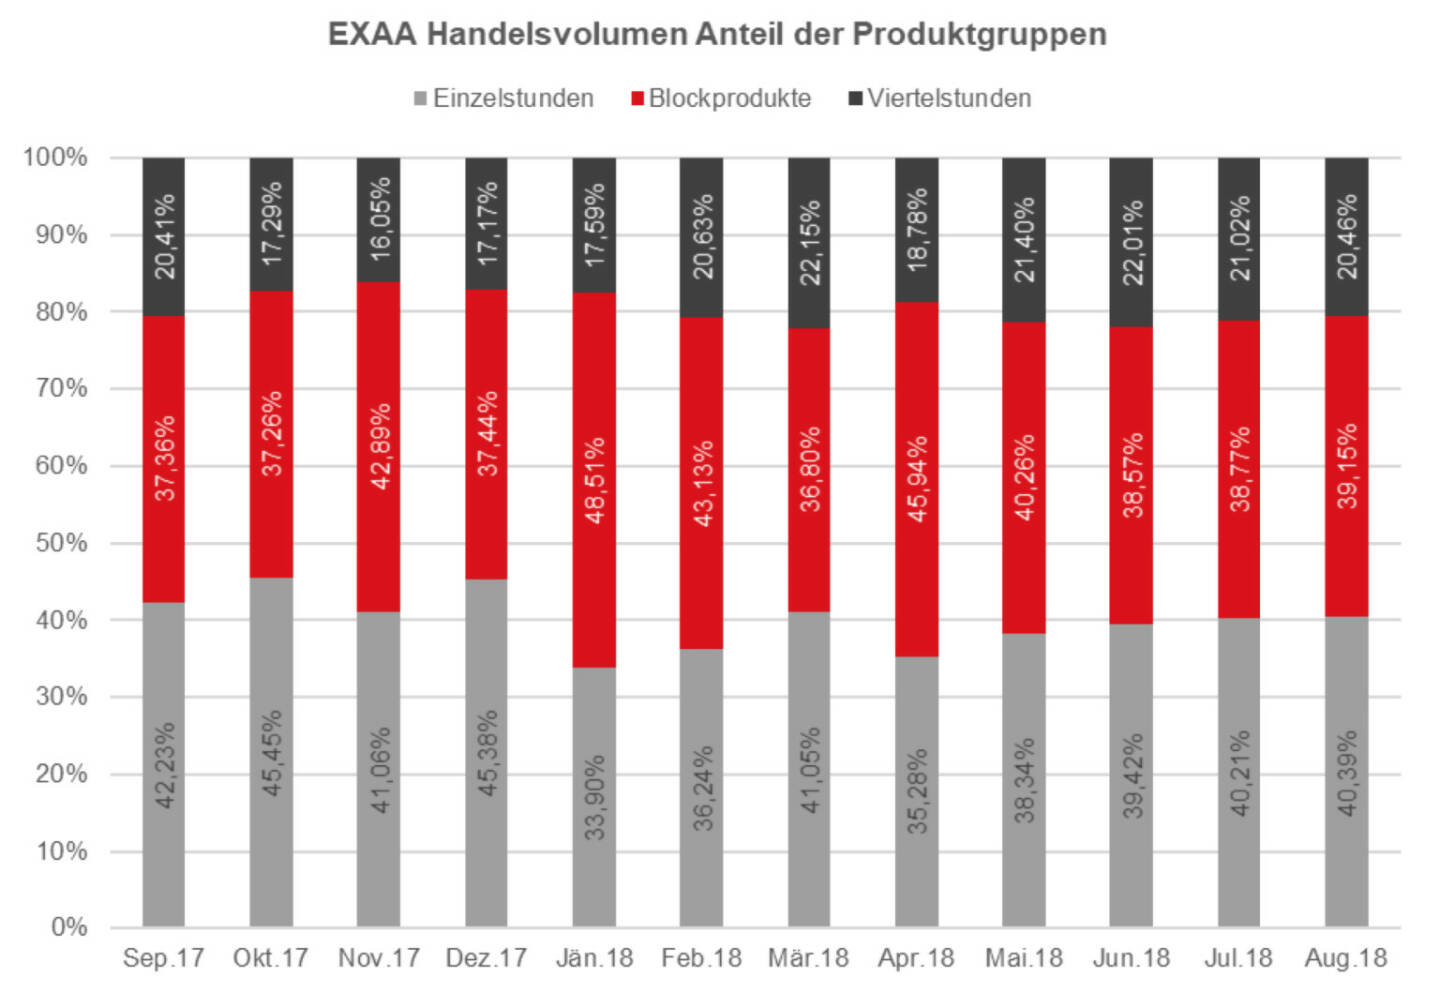 EXAA Handelsvolumen Anteil der Produktgruppen August 2018